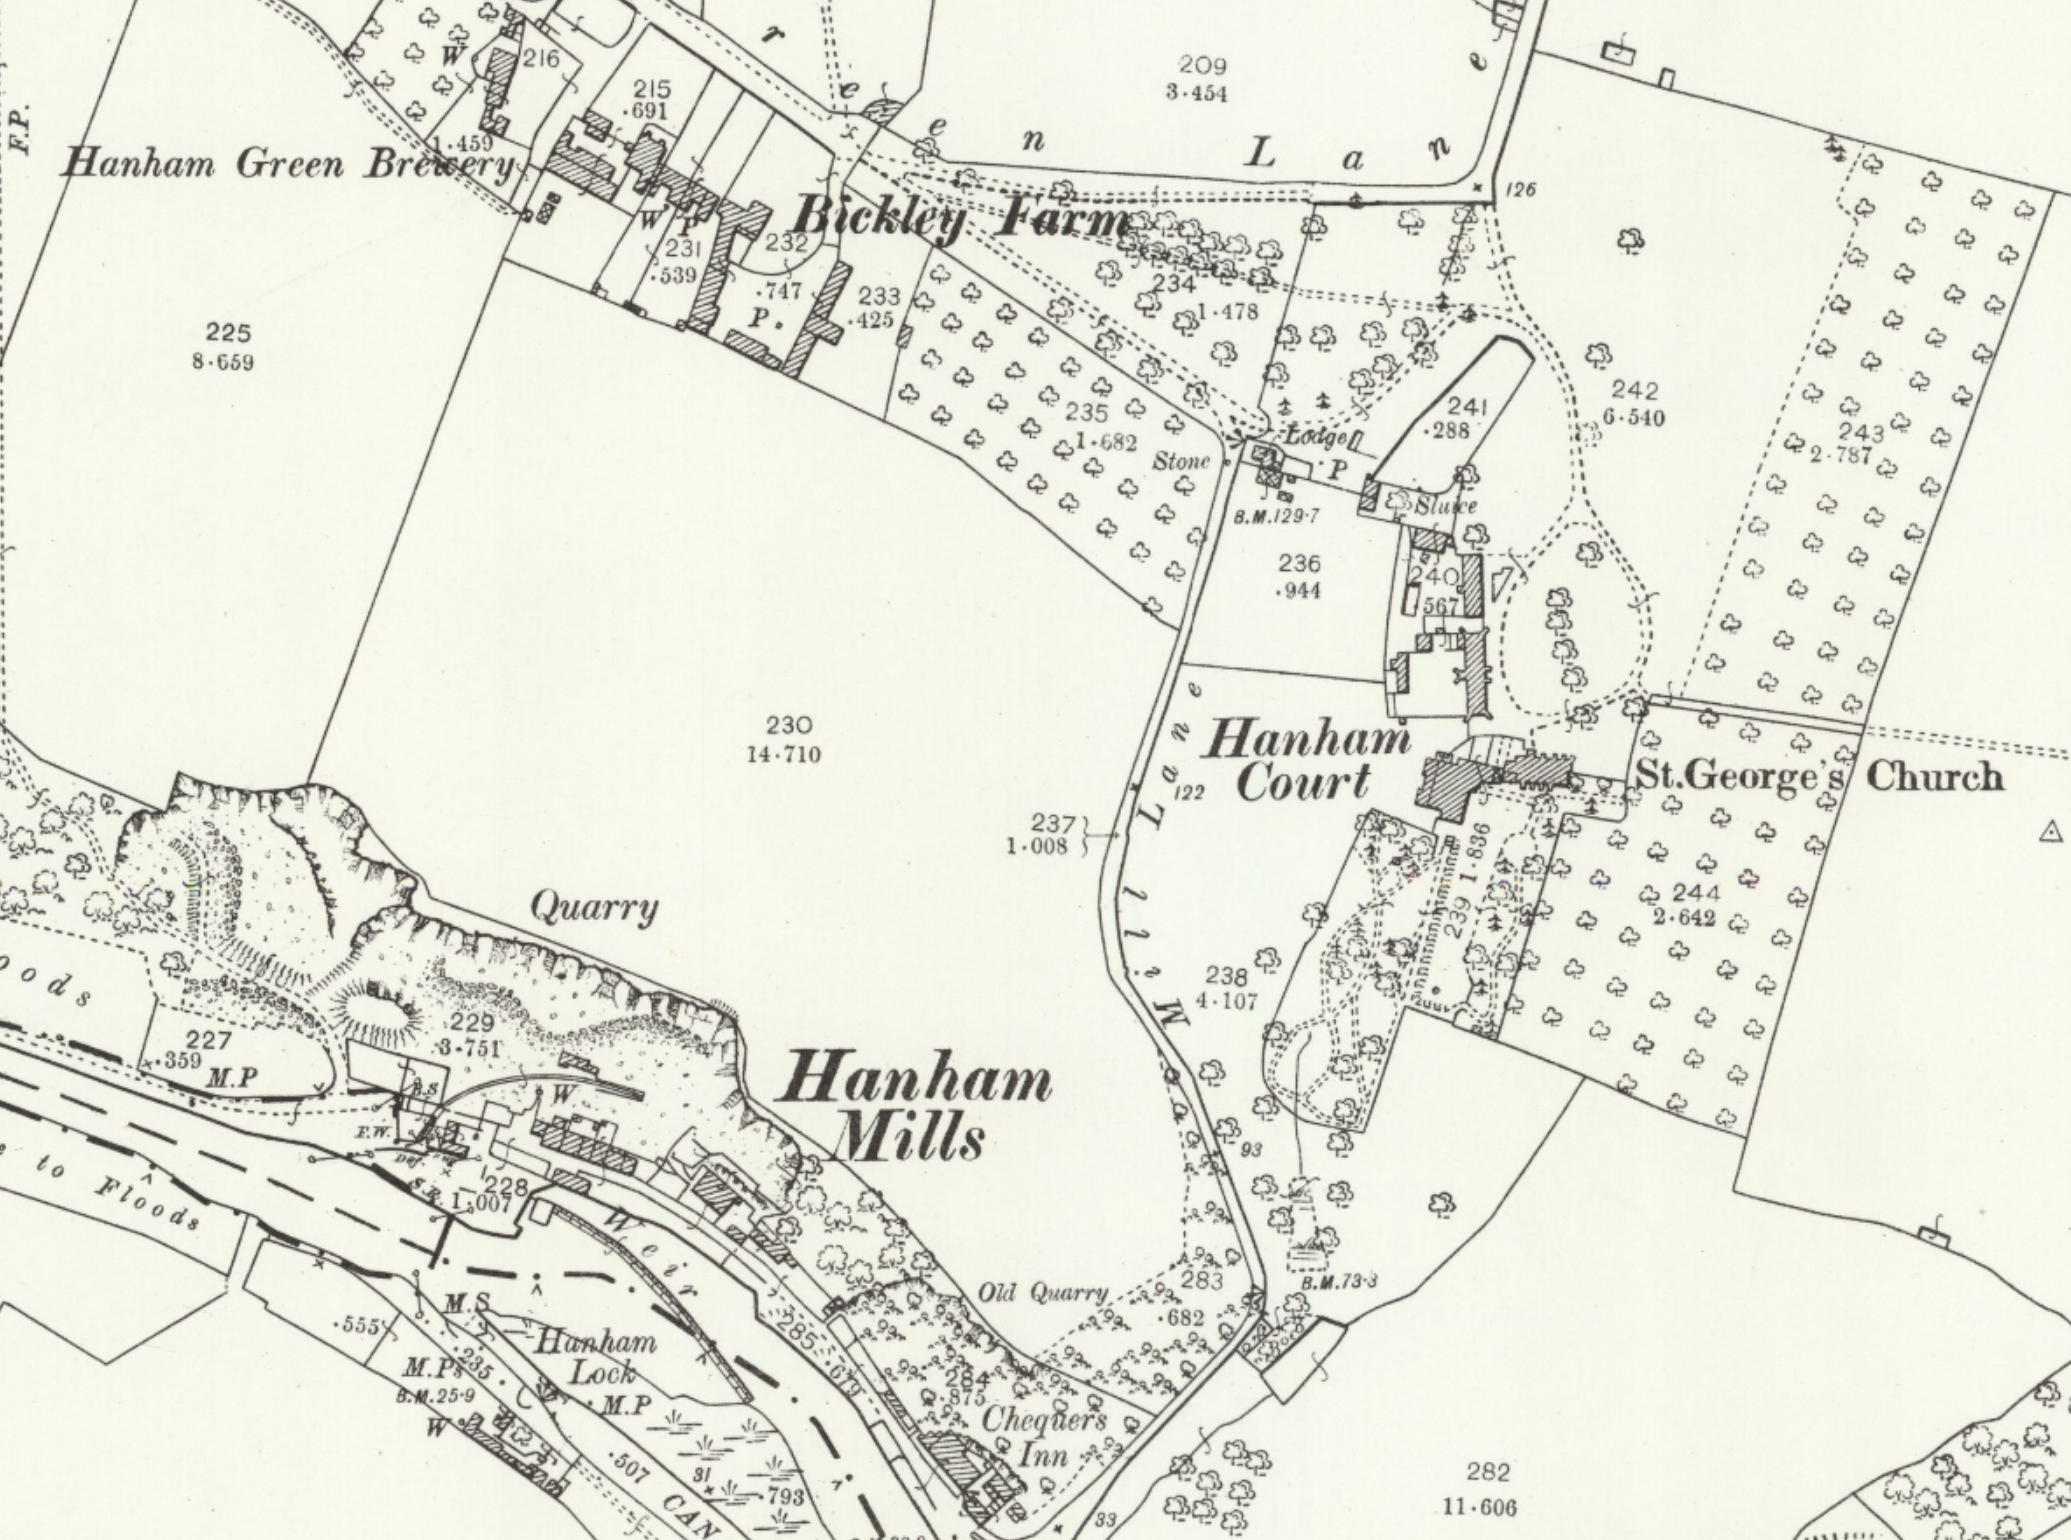 Figure 5: Map of Hanham Green